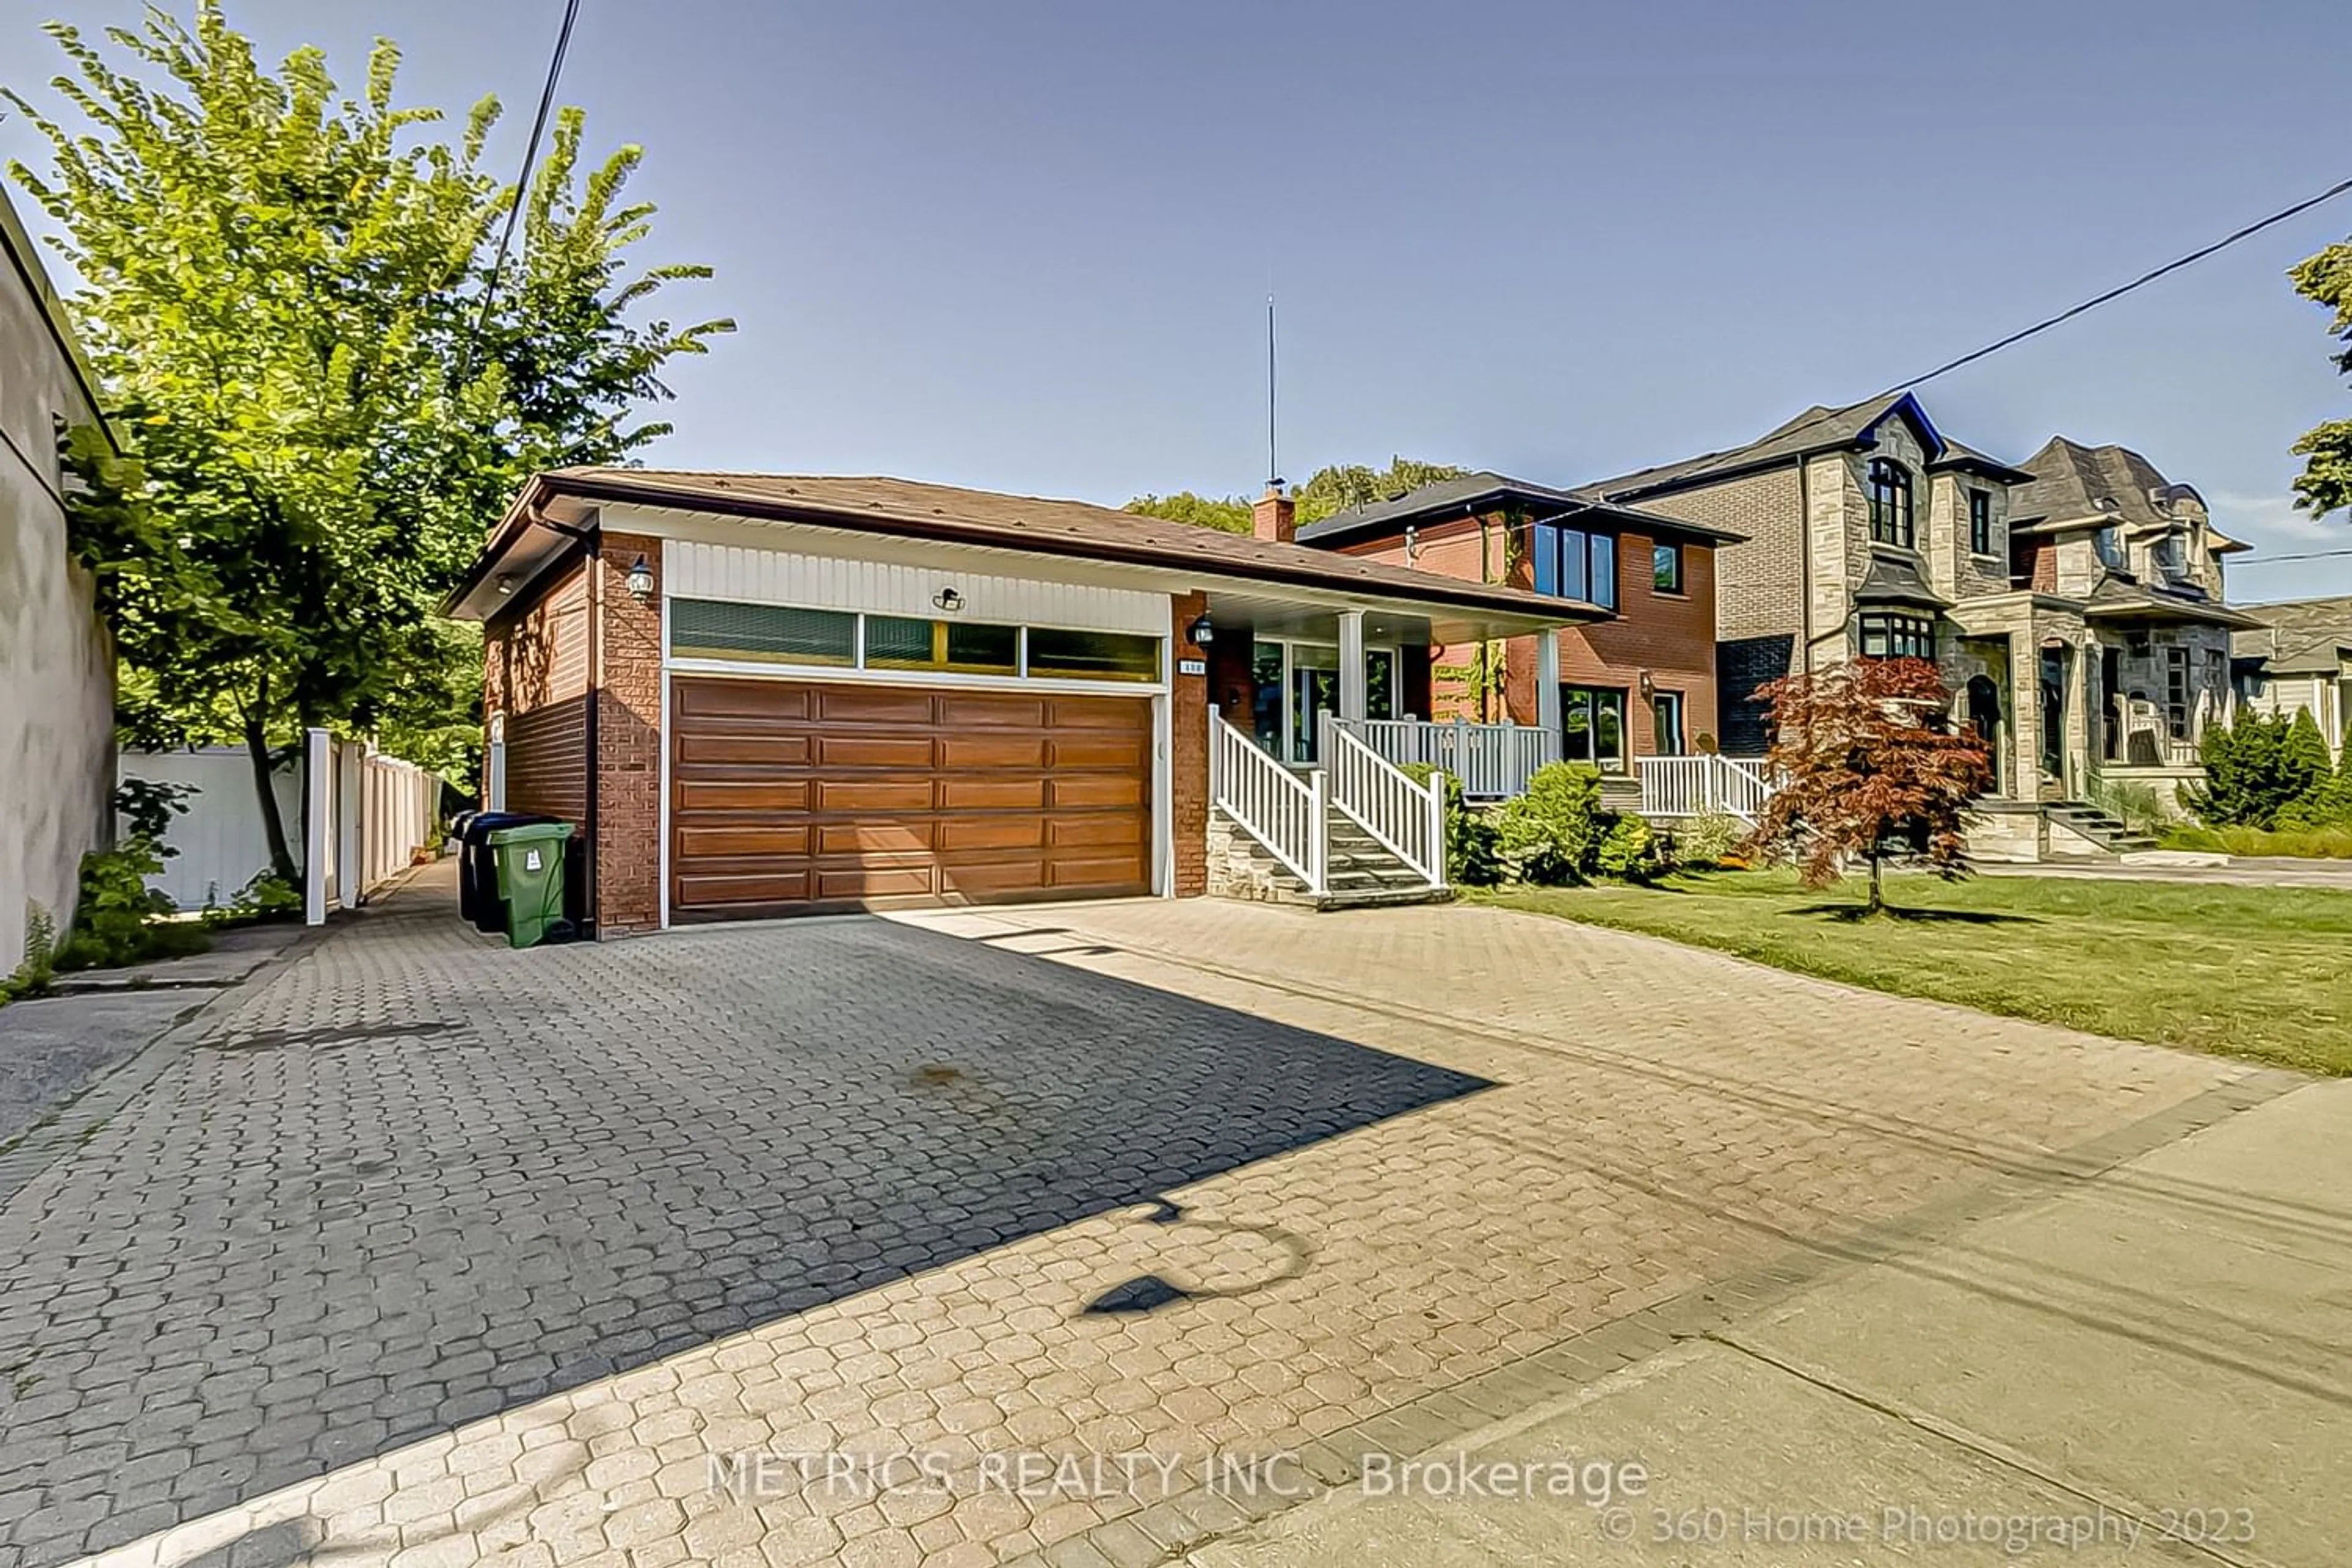 Home with brick exterior material for 406 Glen Park Ave, Toronto Ontario M6B 2E5